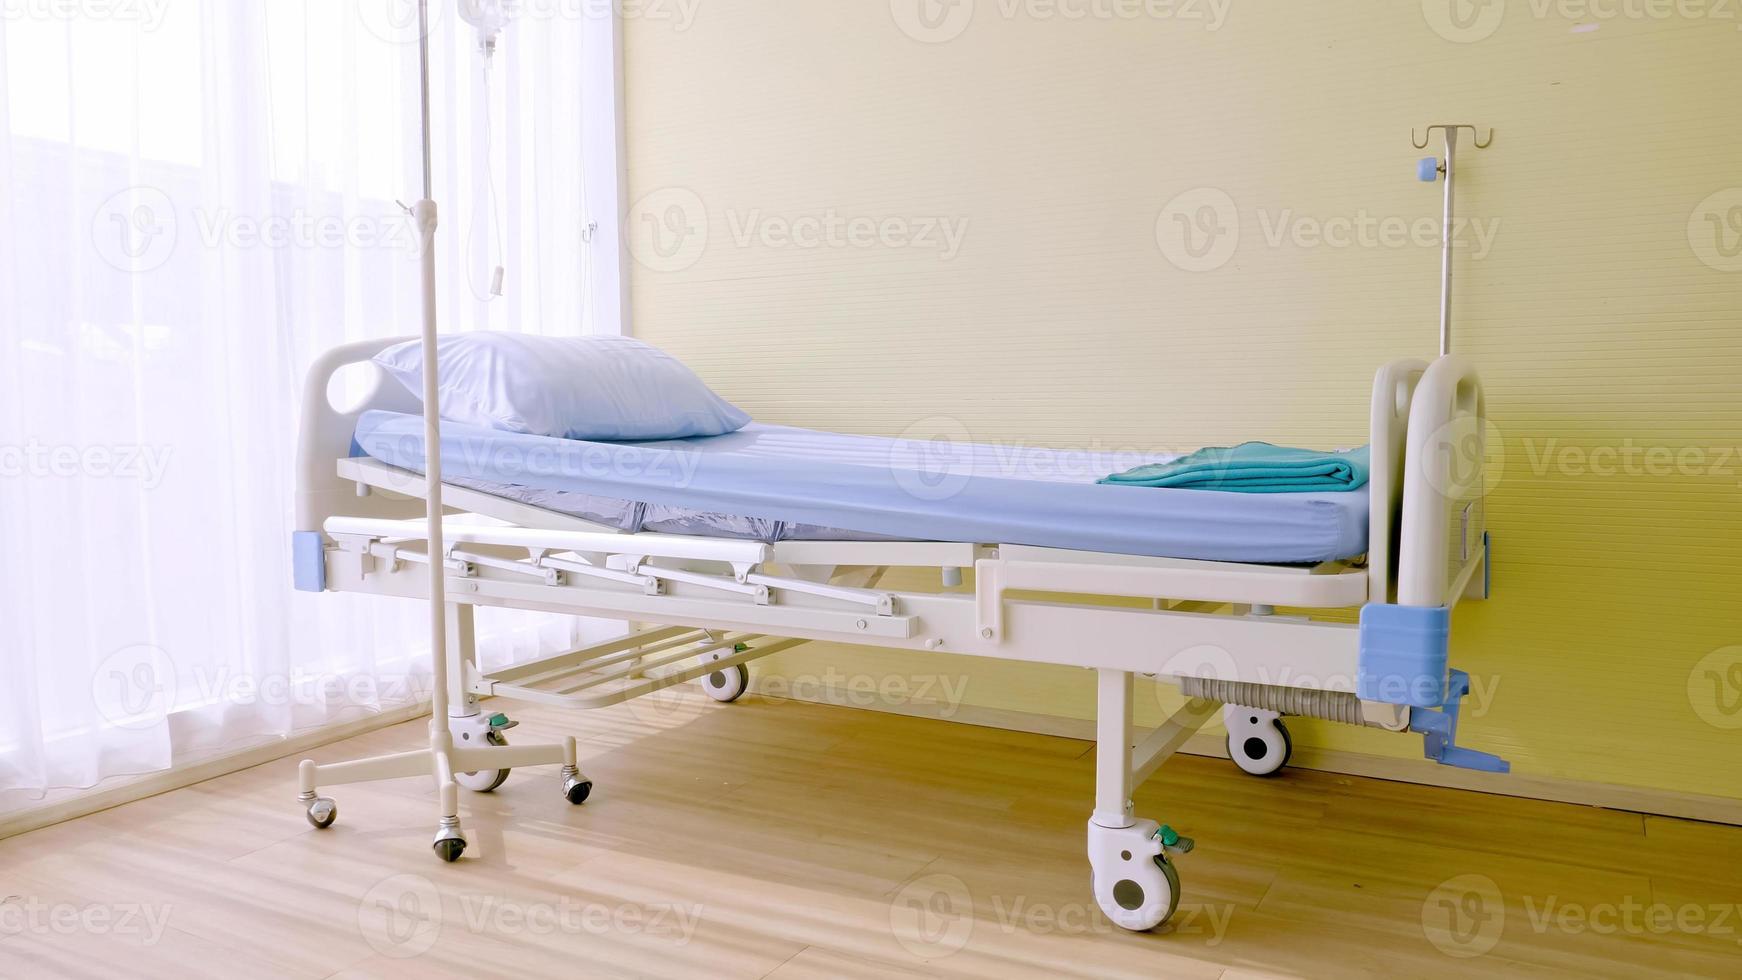 isoliertes Krankenhausbett im Krankenhauszimmer. foto